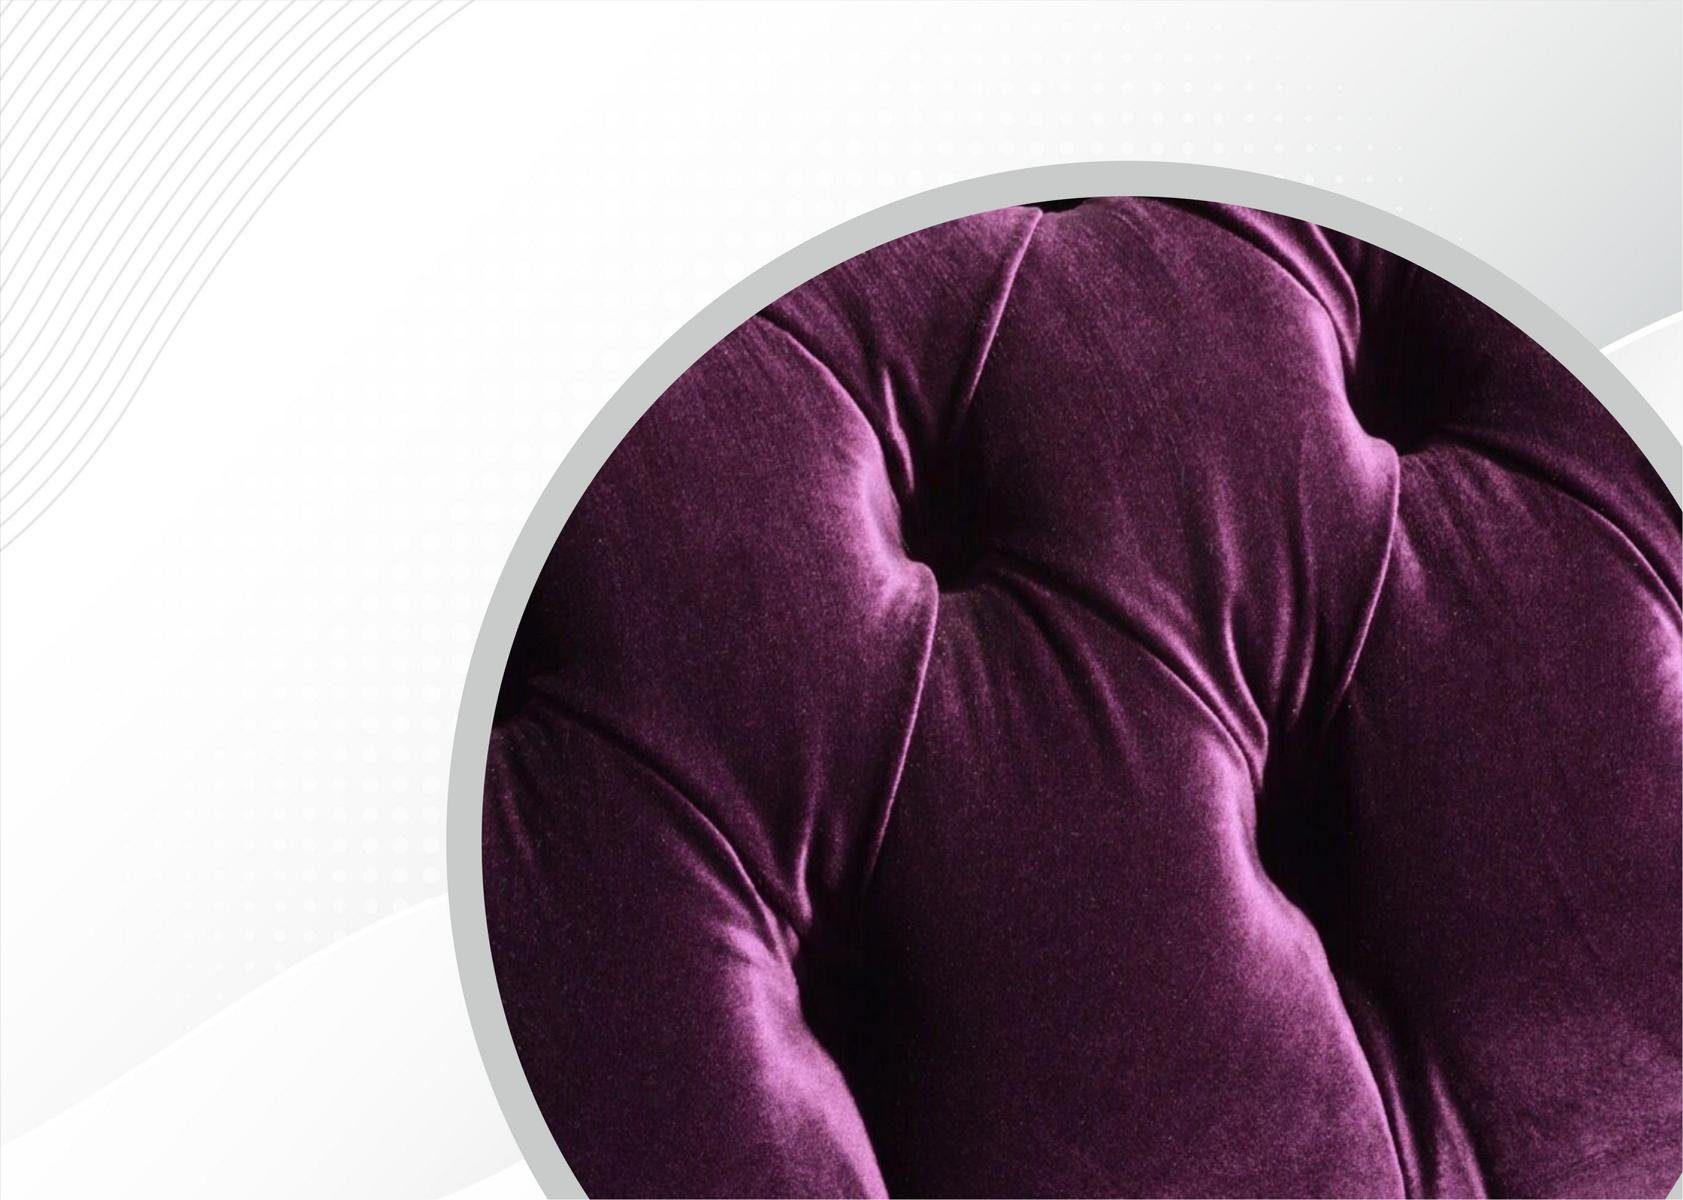 JVmoebel Chesterfield-Sofa Neu, Moderner Couch Made luxus violetter Europe Chesterfield in Dreisitzer Möbel